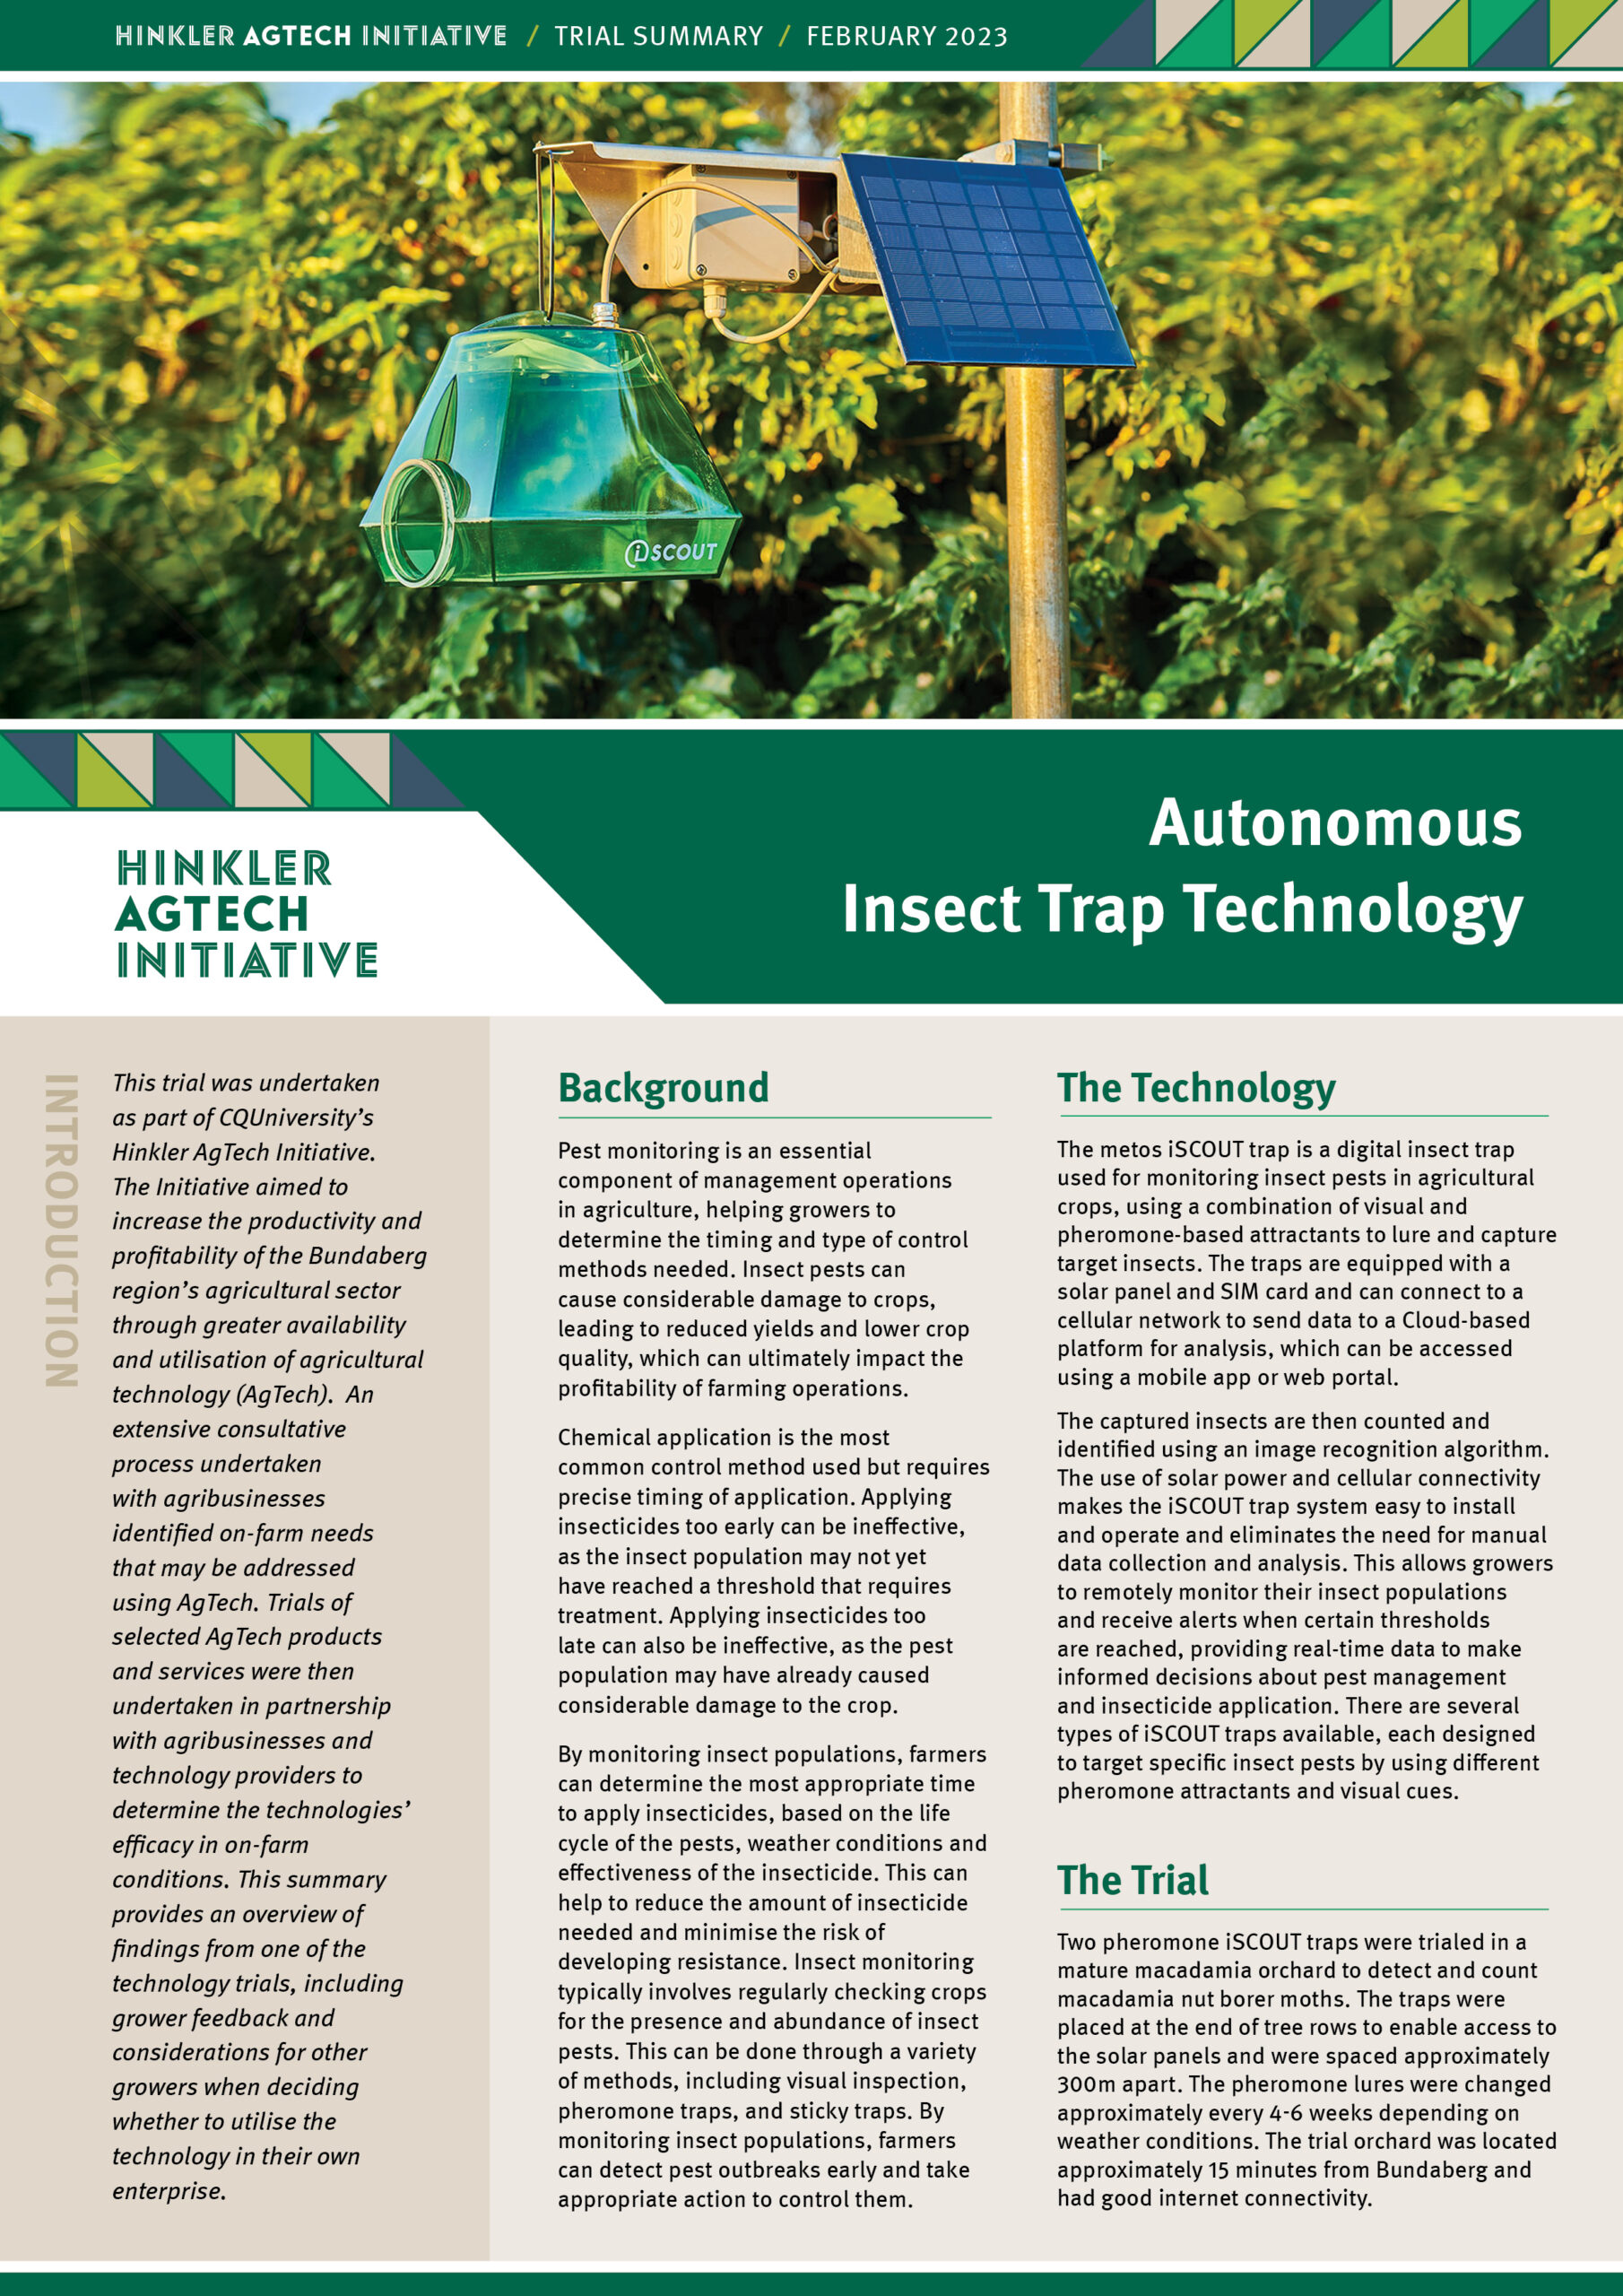 Autonomous Insect Trap Technology